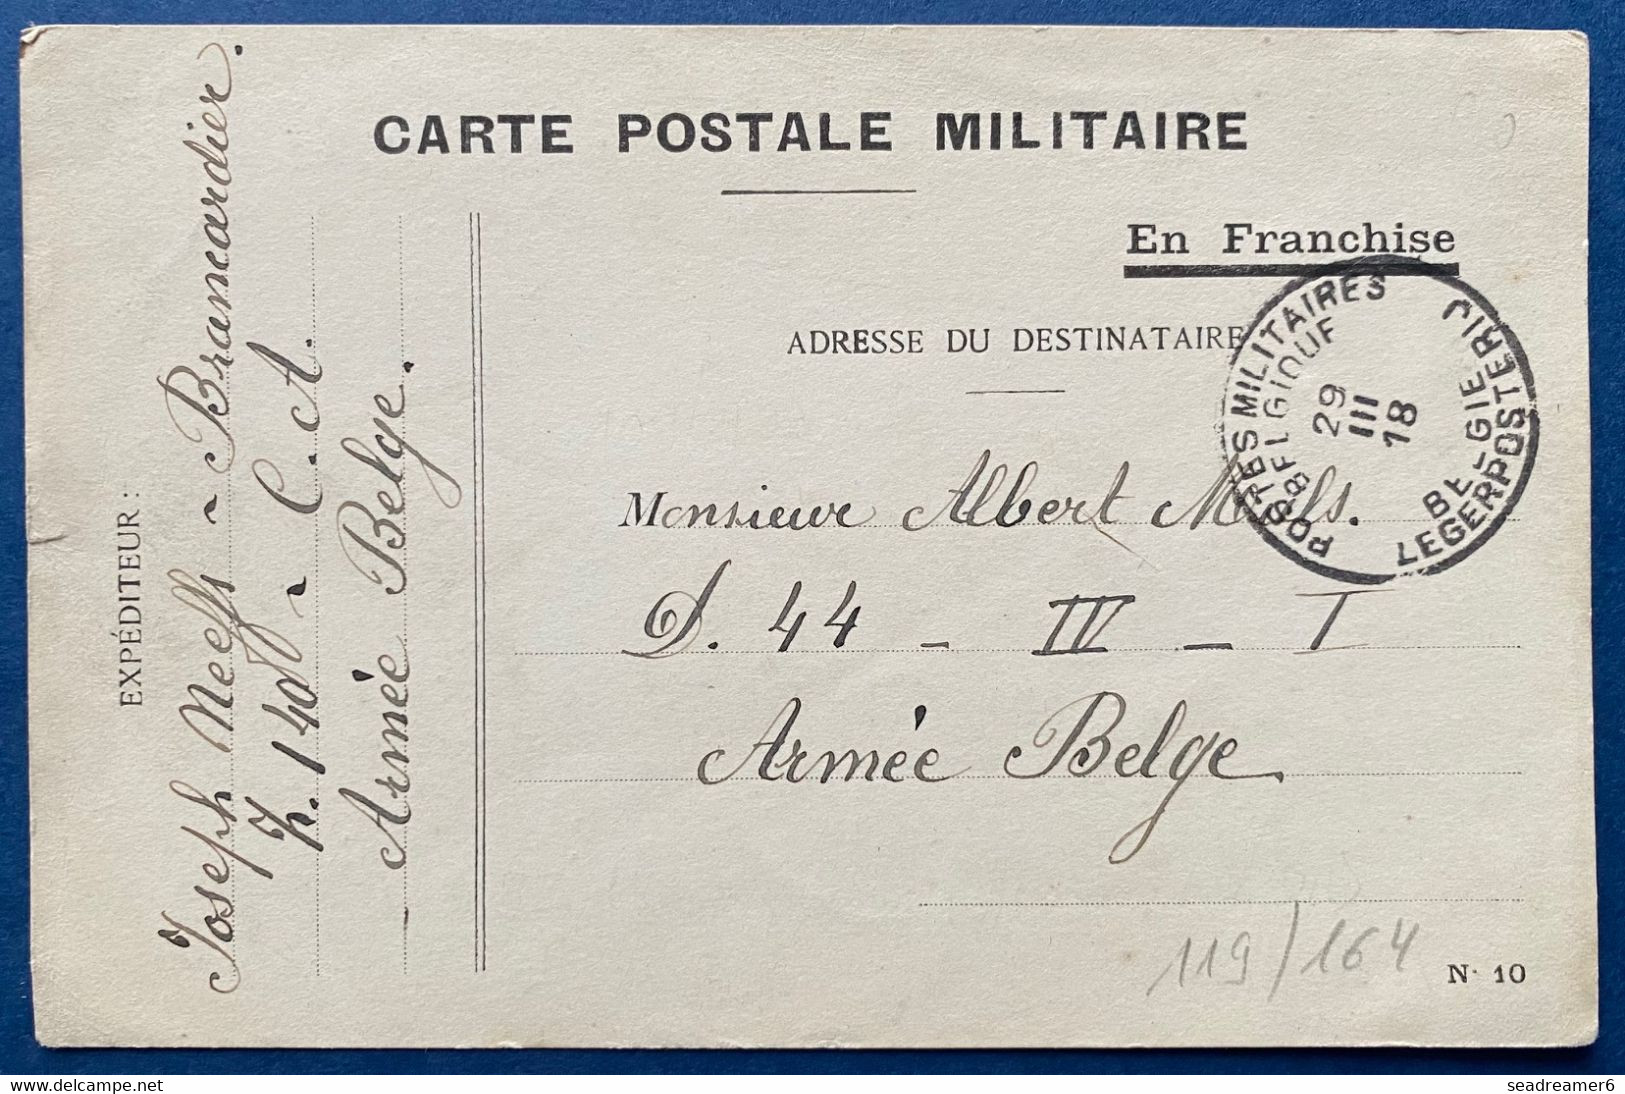 Carte Postale Militaire En Franchise Type N°10 Obl Dateur 29 Mars 1918 Postes Militaires Belgique PMB Pour Un Soldat TTB - Armada Belga